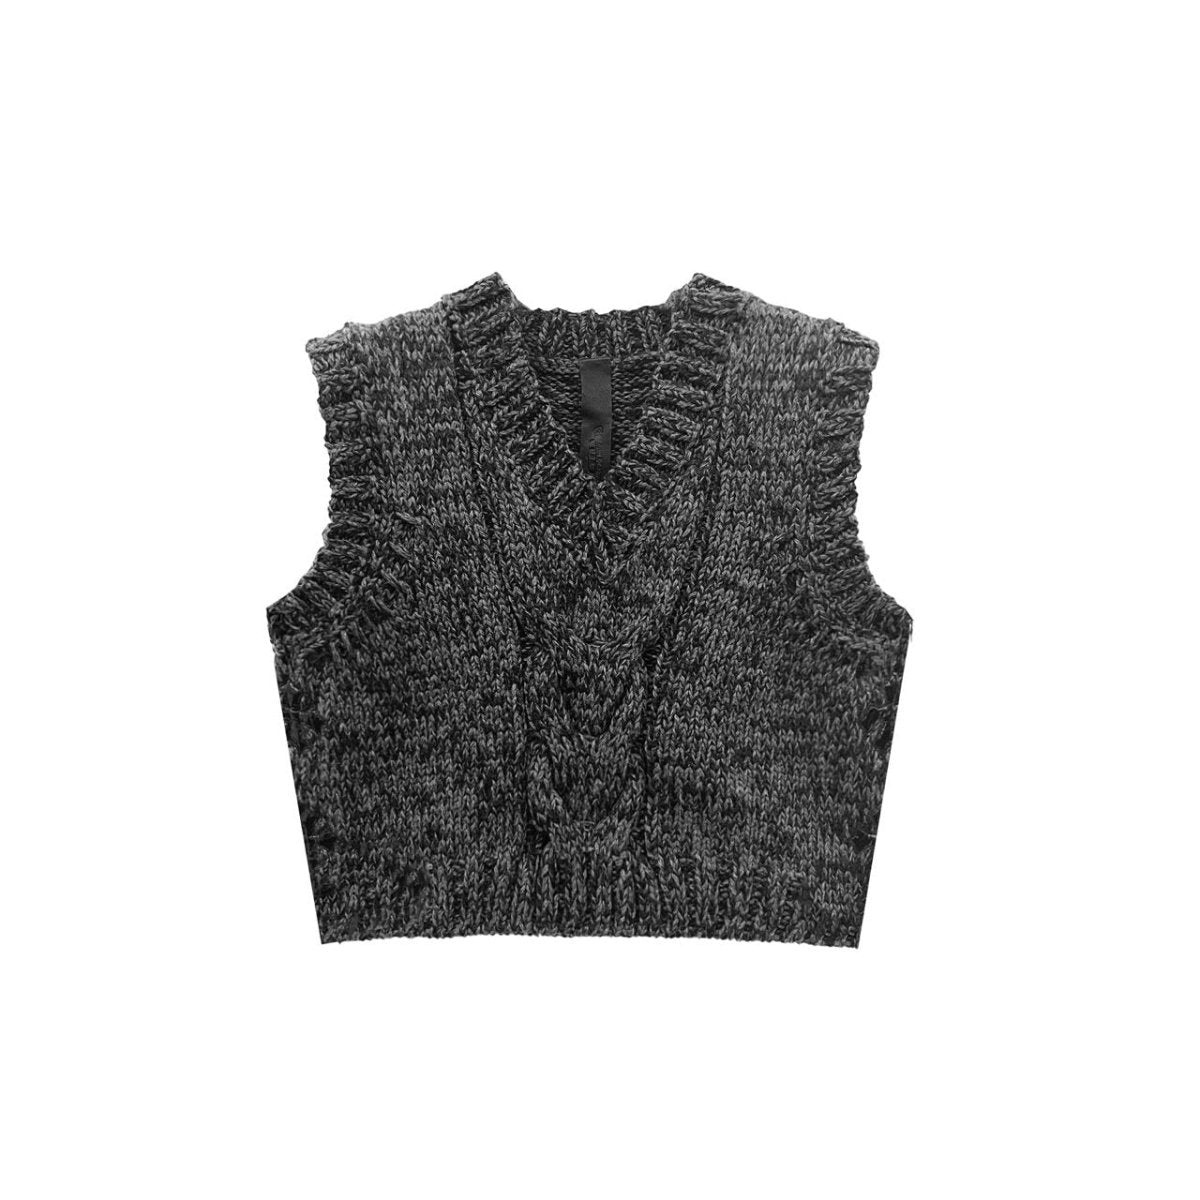 Chrome Hearts V - Neck Cross Leather Patch Sweater Vest - SHENGLI ROAD MARKET